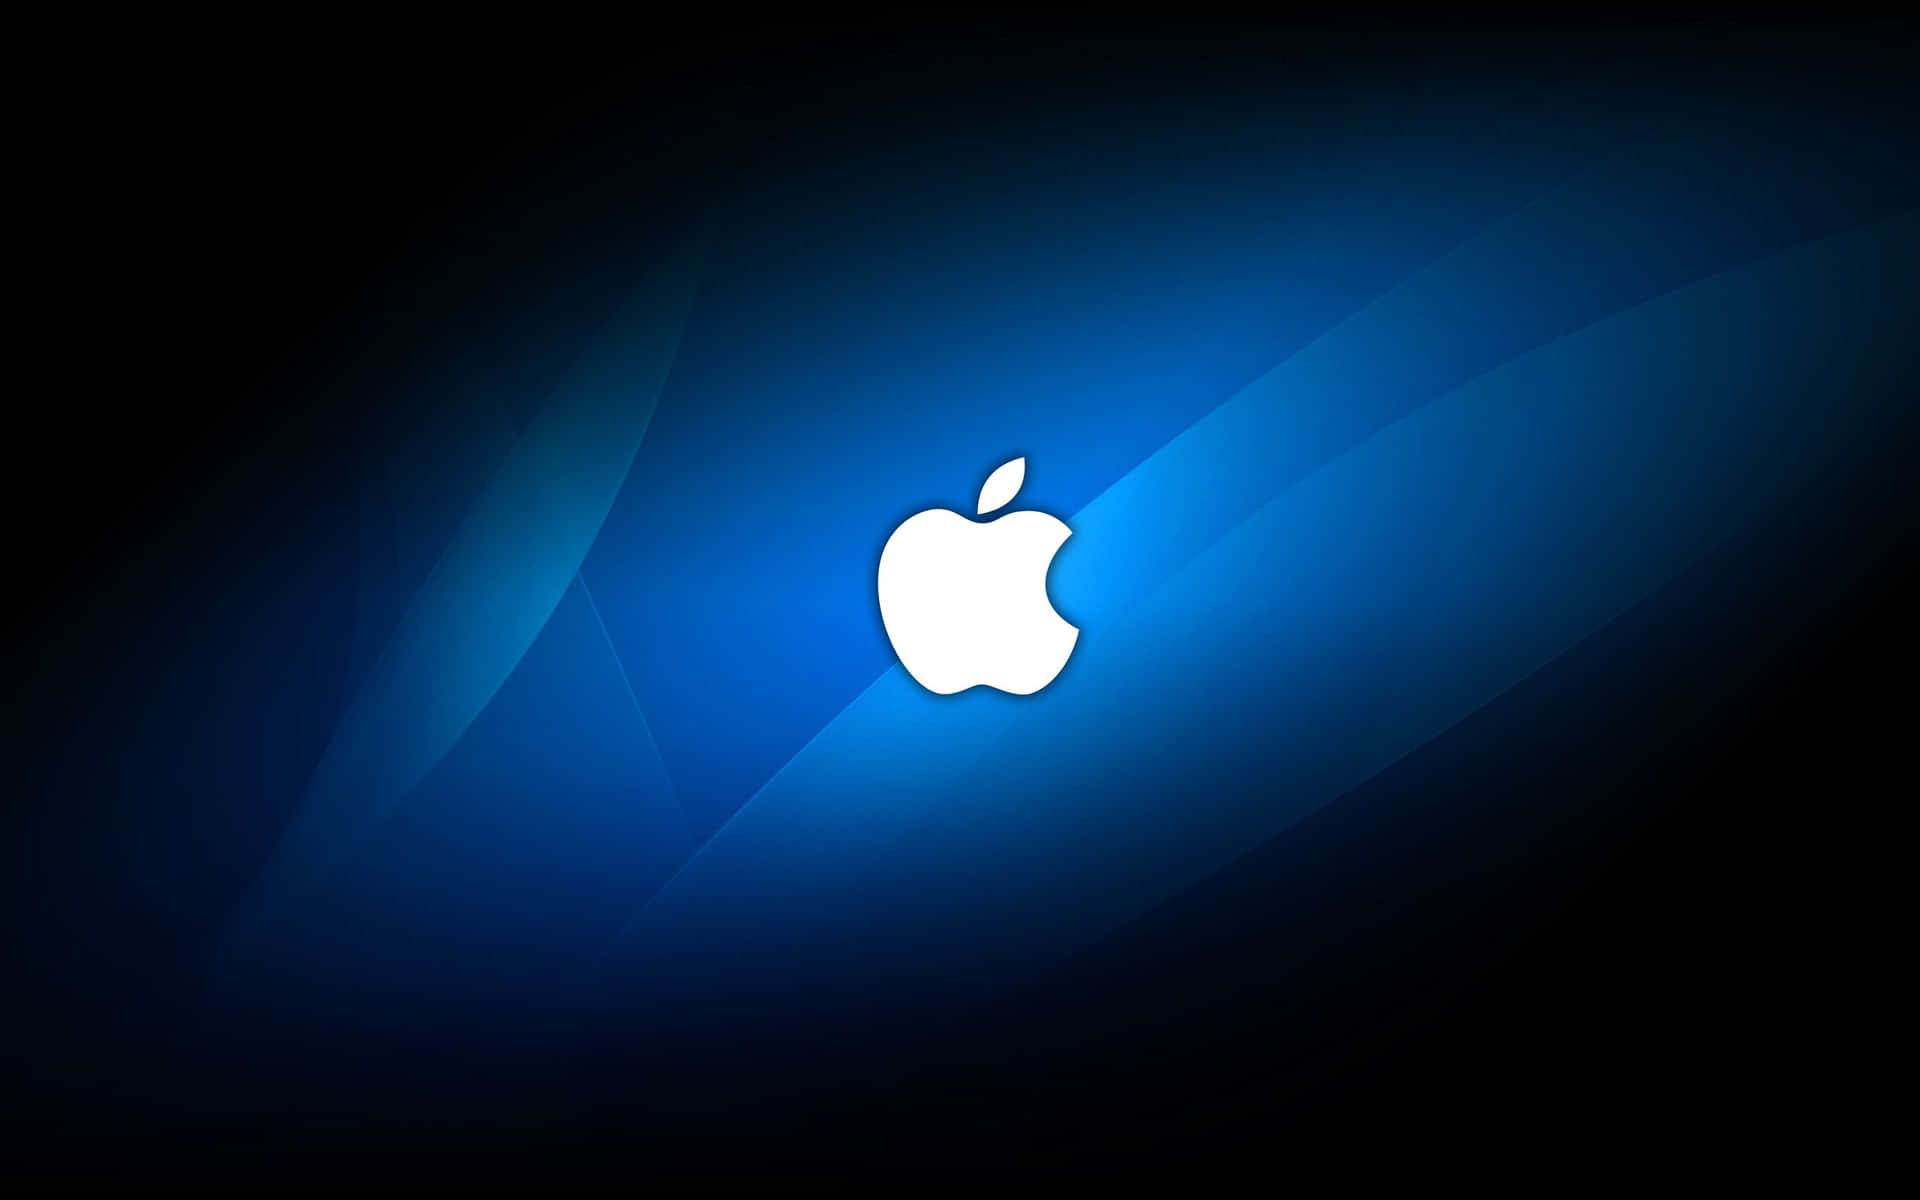 Fondode Pantalla Negro Y Azul Con El Logotipo De Apple En Alta Definición.